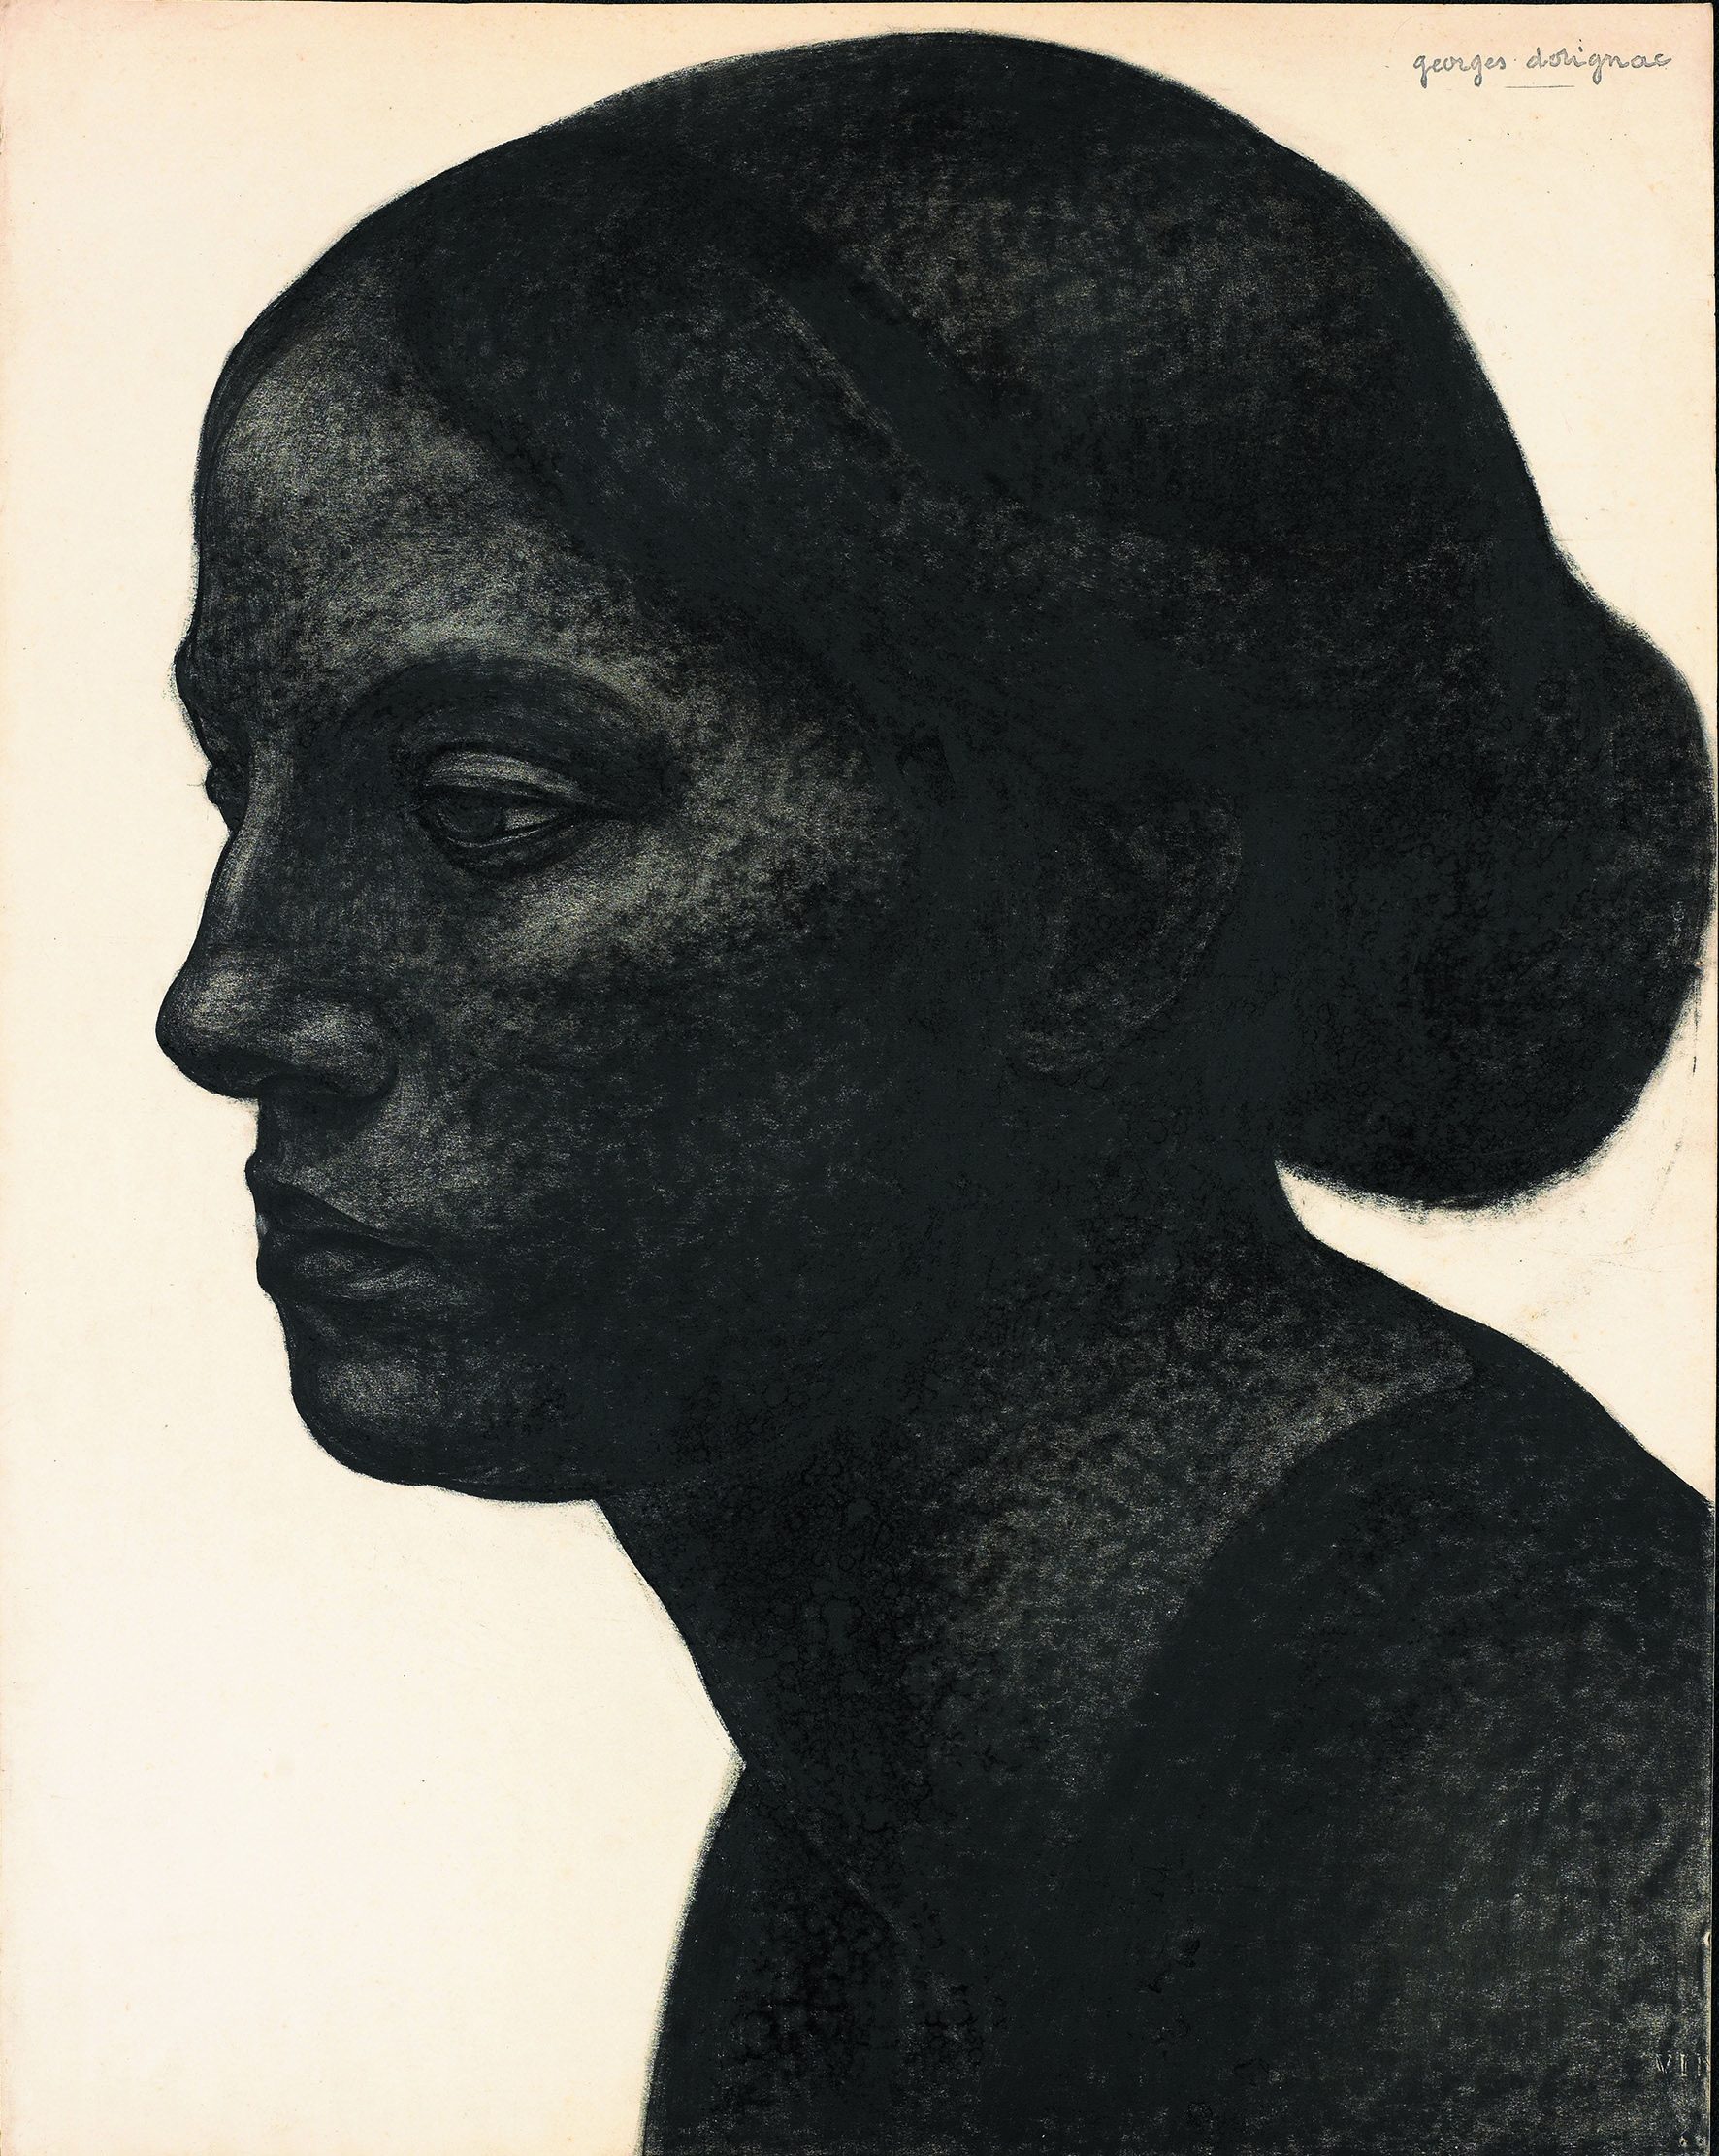  Le Trait sculpté de Georges Dorignac/aufildeslieux.fr/Portrait-de-femme-au-chignon © Photo K.HIBBS